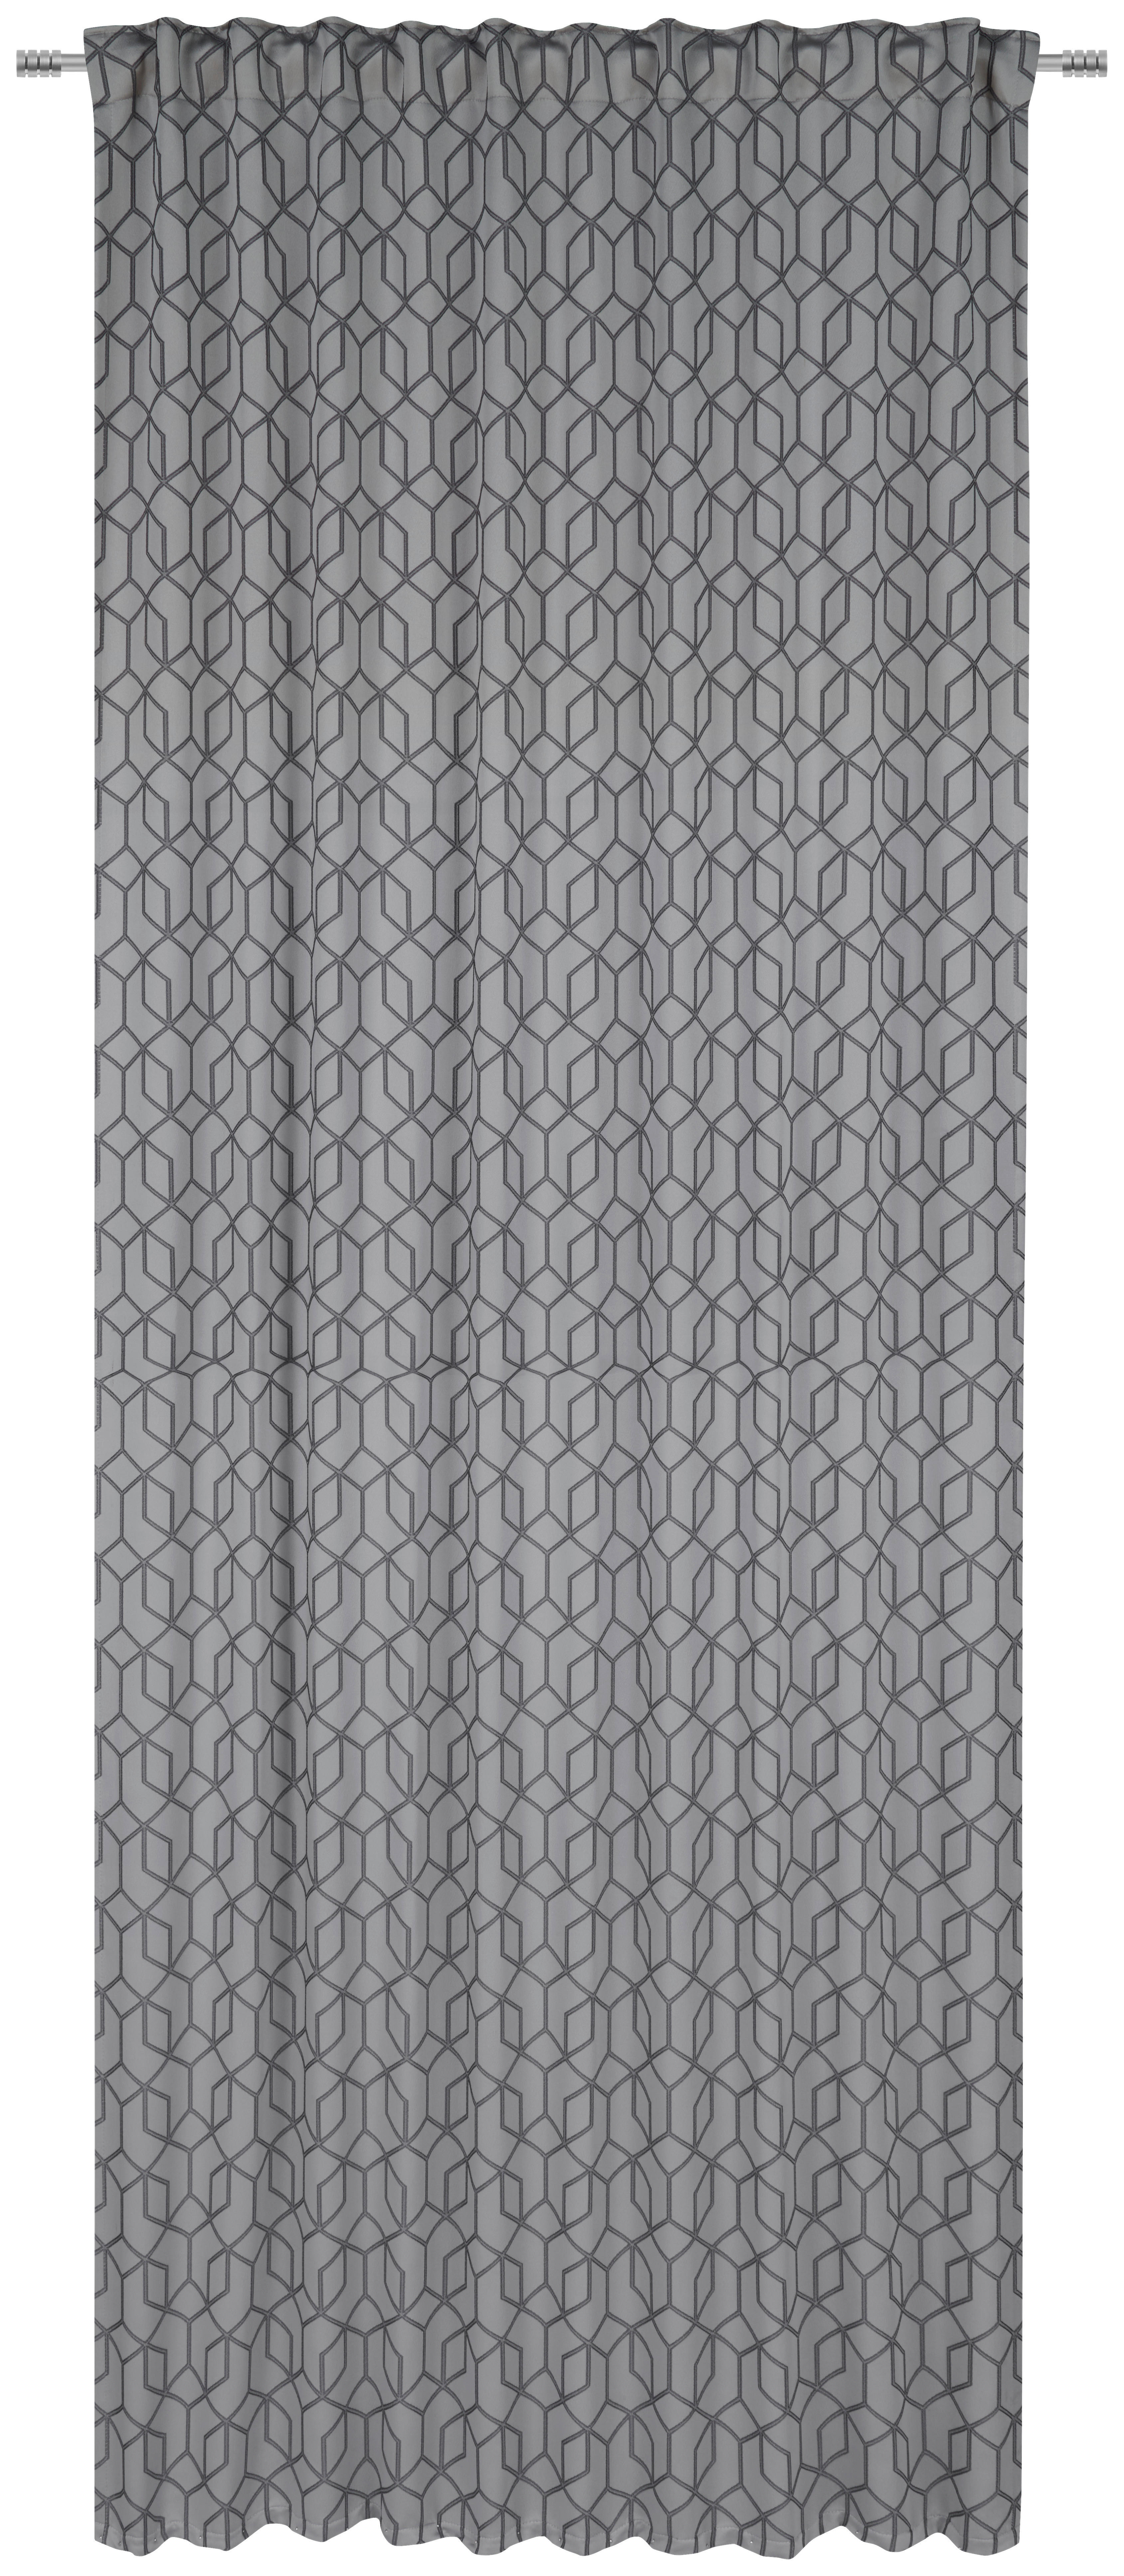 GOTOVA ZAVESA siva - siva, Konvencionalno, tekstil (140/260cm) - Dieter Knoll